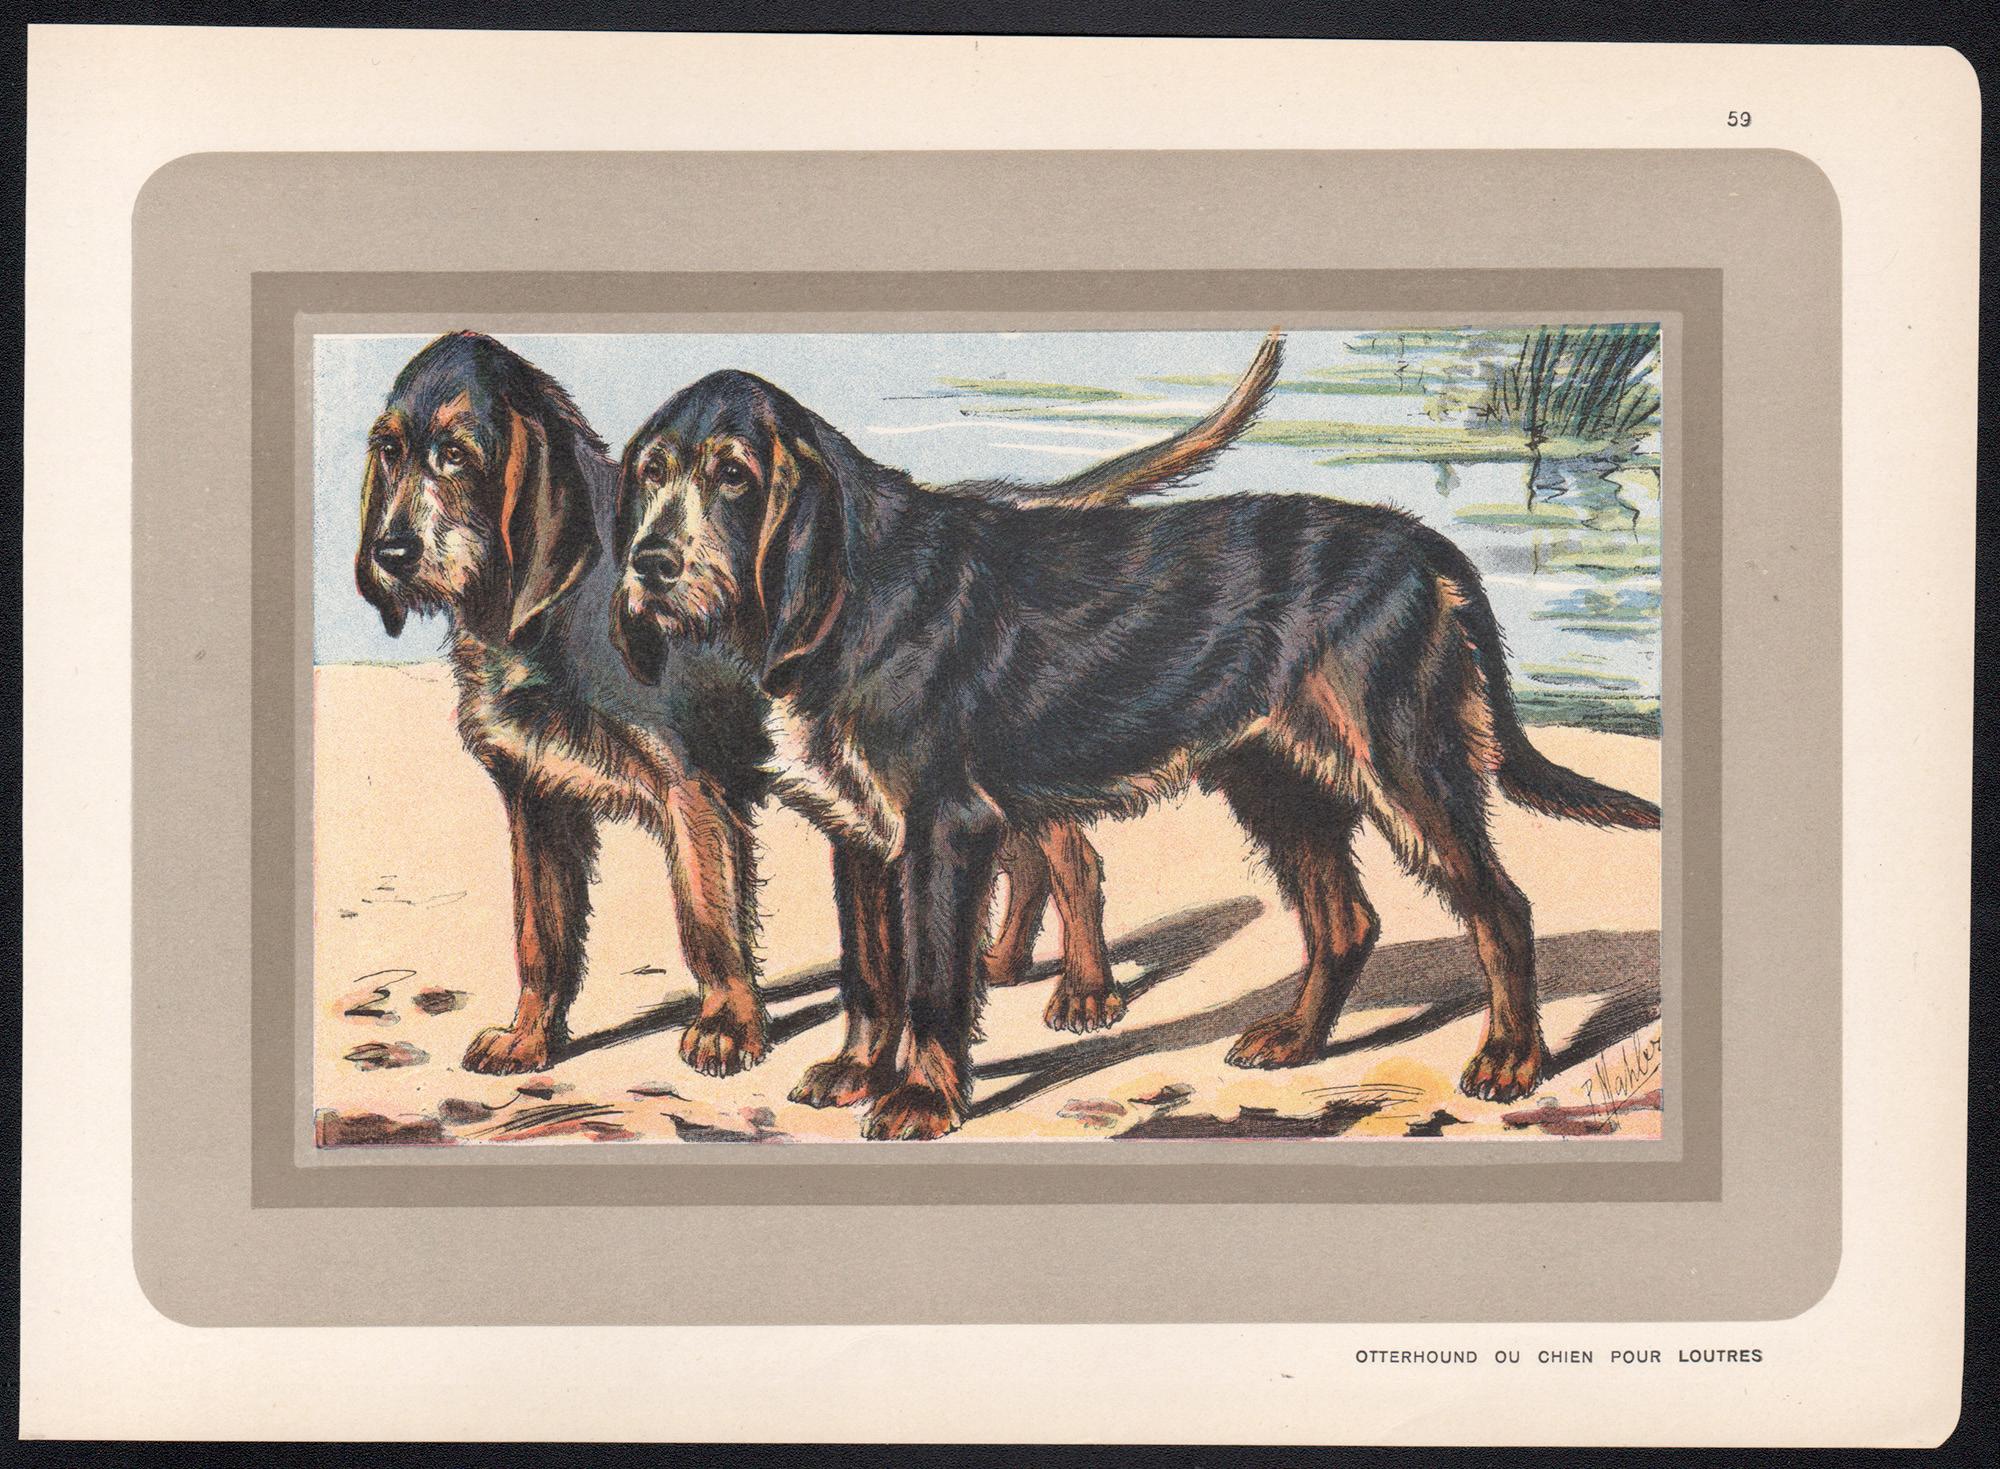 Otterhound Ou Chien Pour Loutres, chien, chromolithographie française, années 1930 - Print de P. Mahler